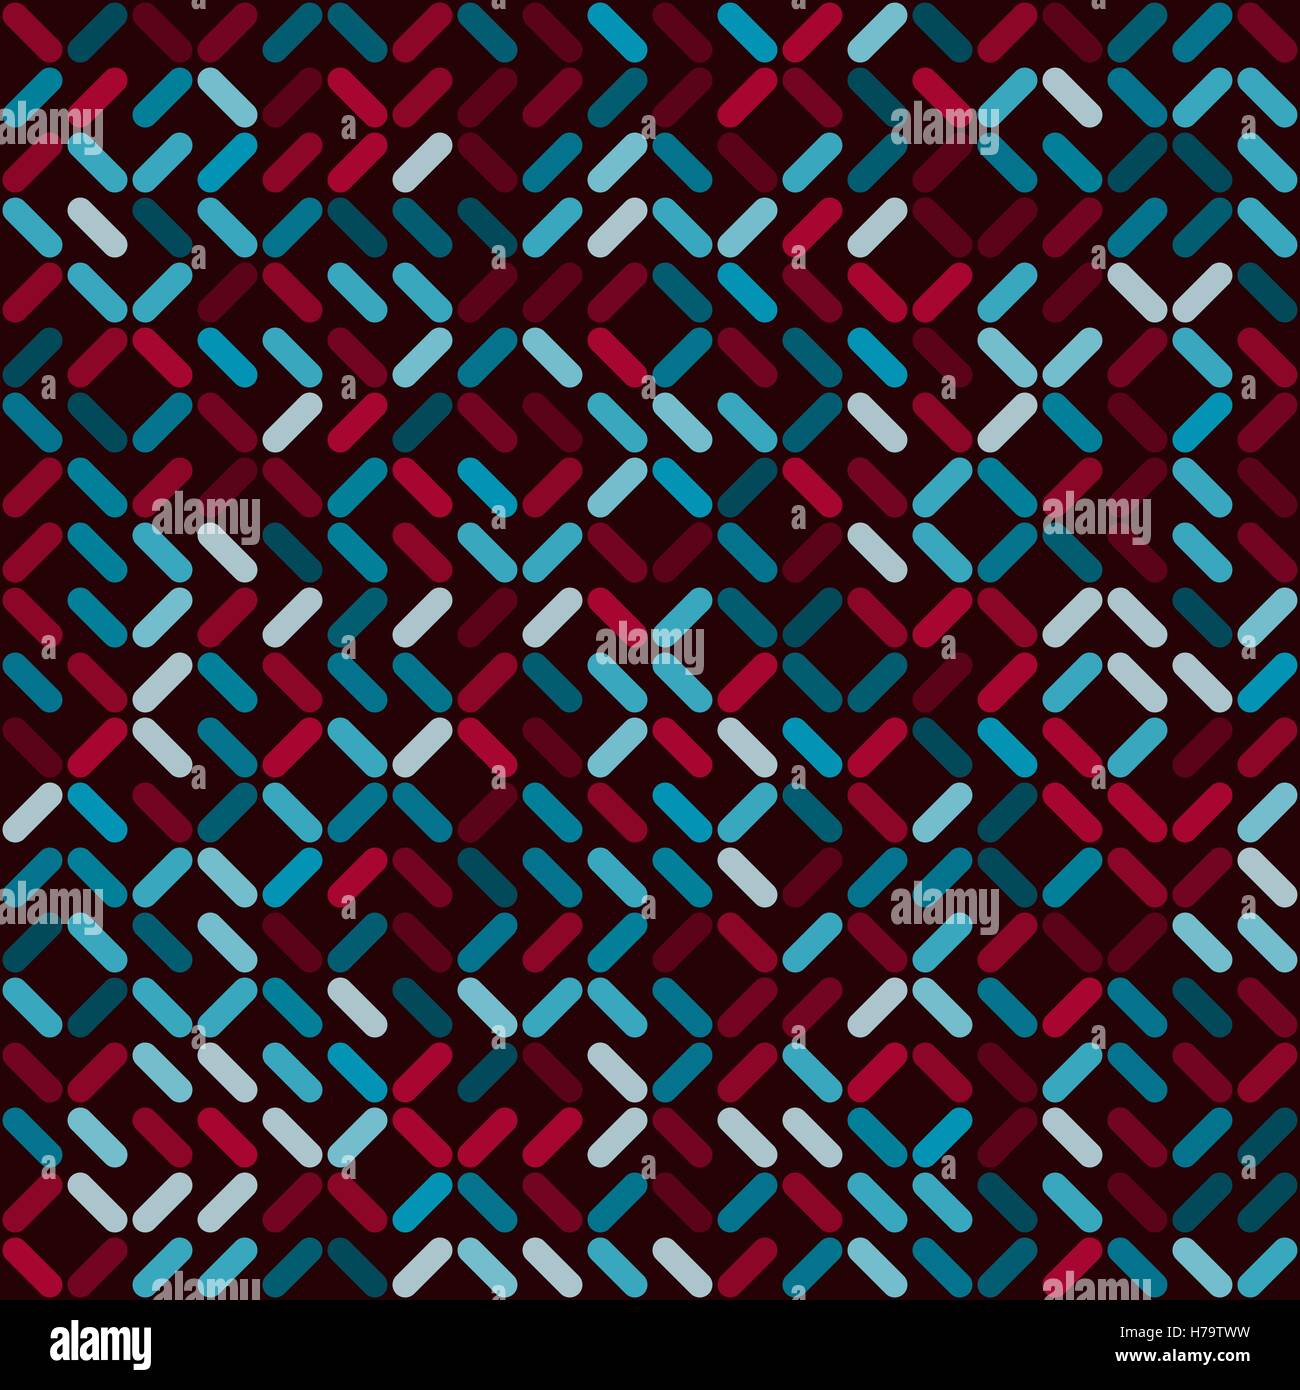 Vektor-nahtlose abgerundete Rechtecke geometrische zufällige Position und Farbe Quadrat-Muster in rot und blau Stock Vektor